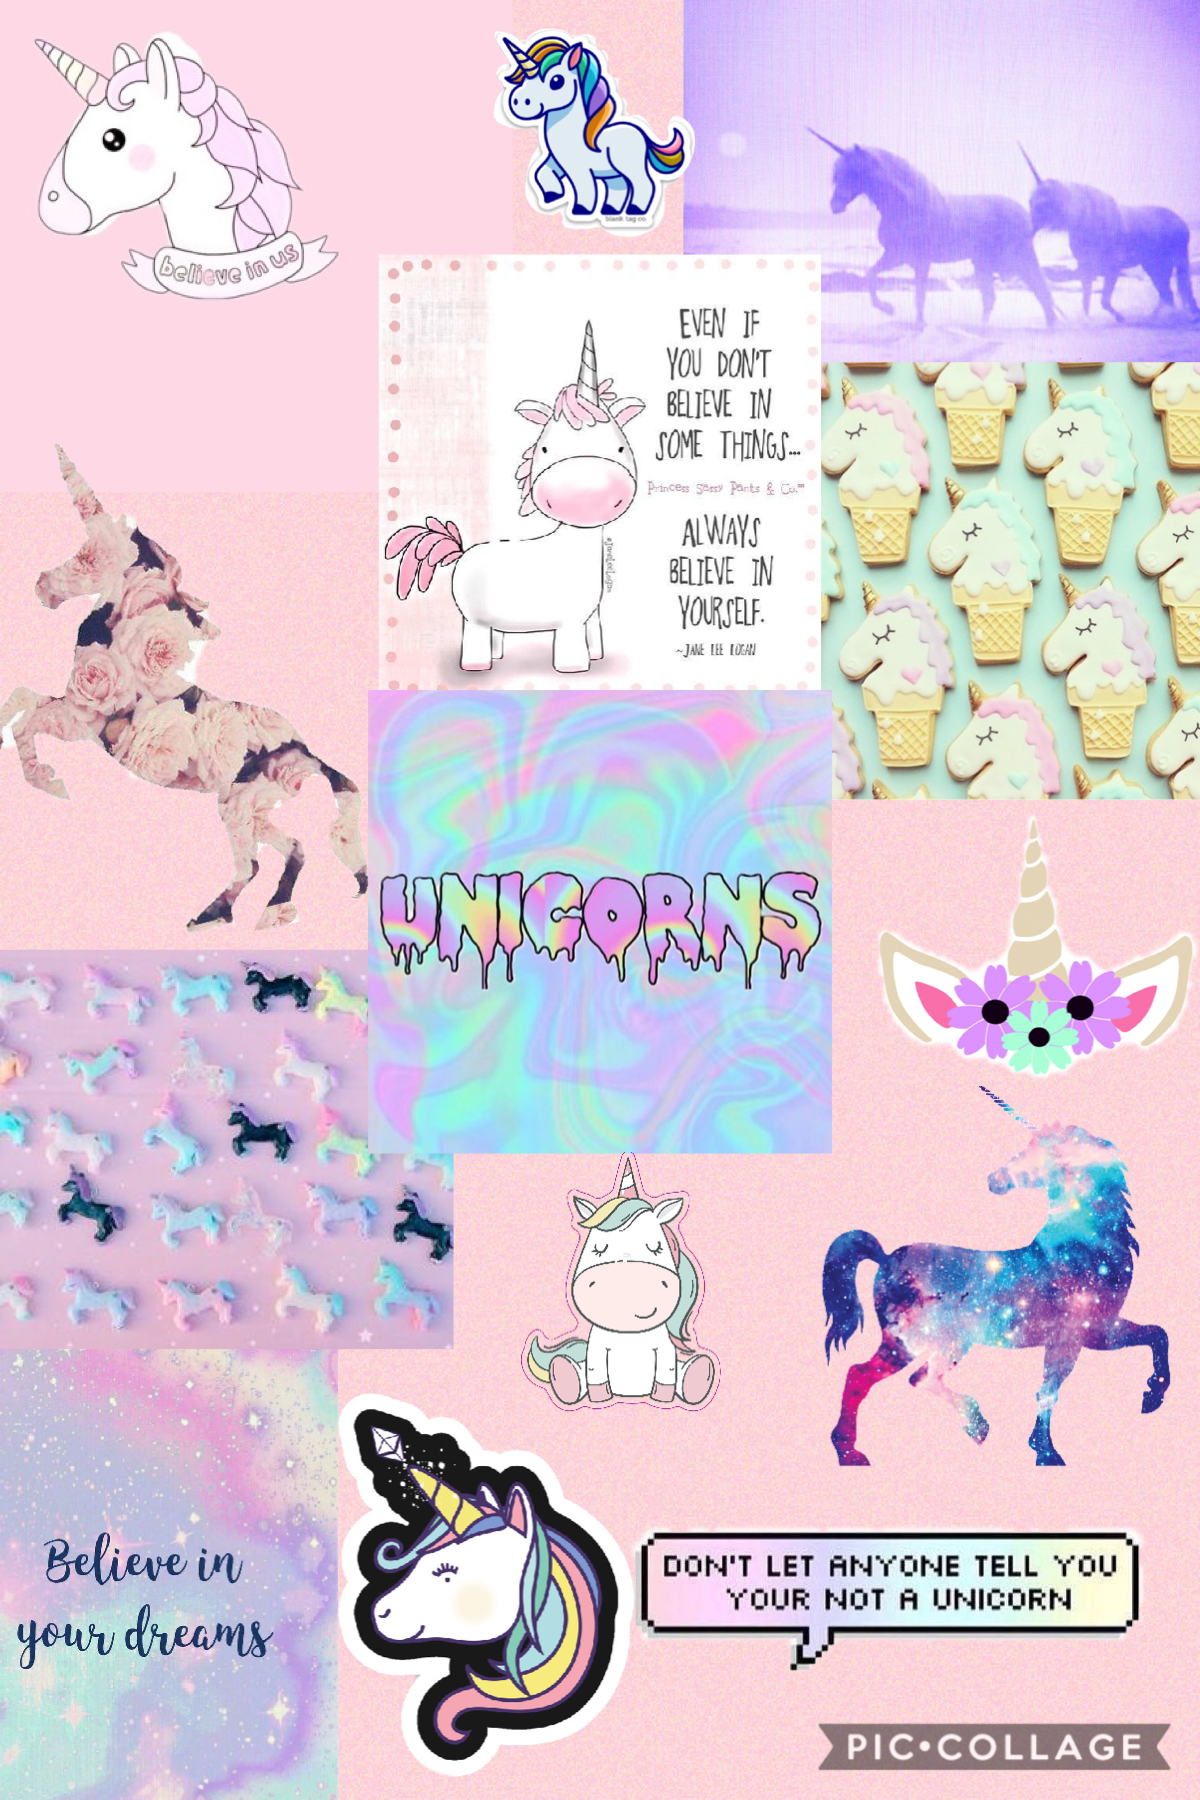 Aesthetic Unicorn Wallpapers